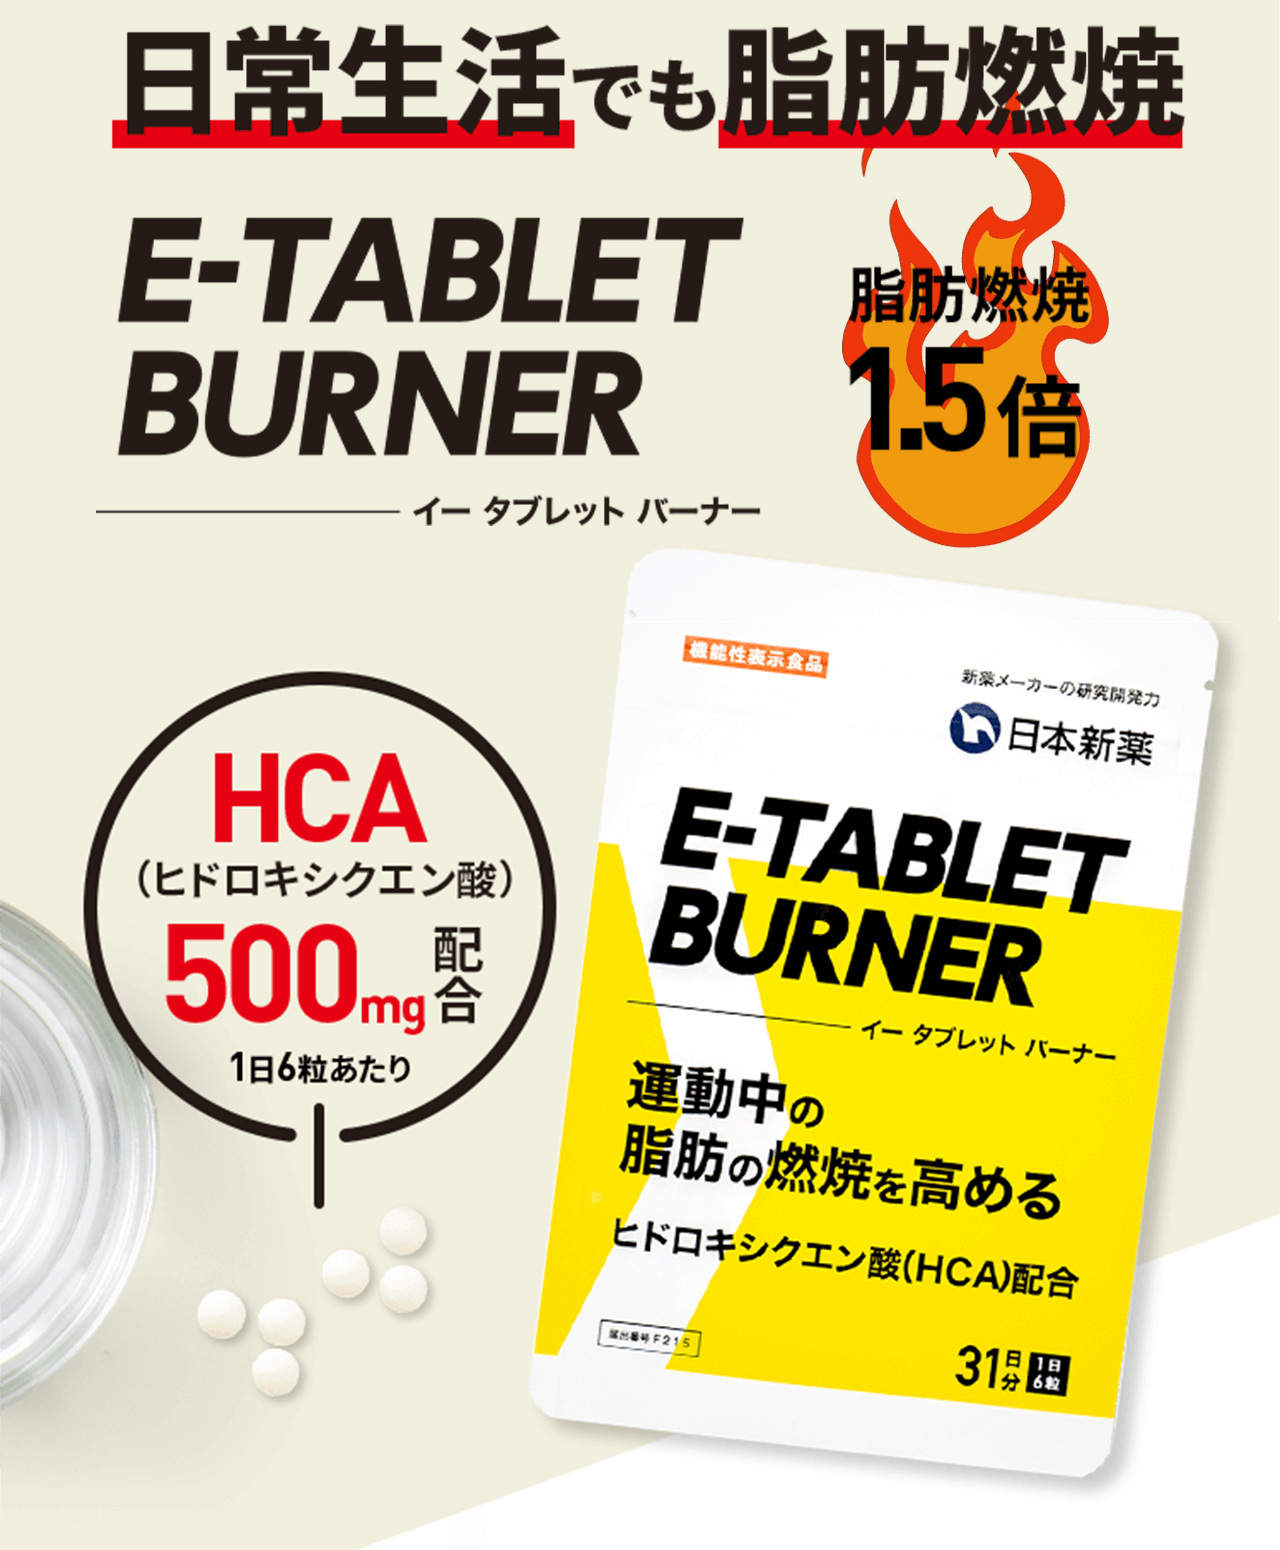 日常生活でも脂肪燃焼「E-TABLET BURNER」脂肪燃焼1.5倍